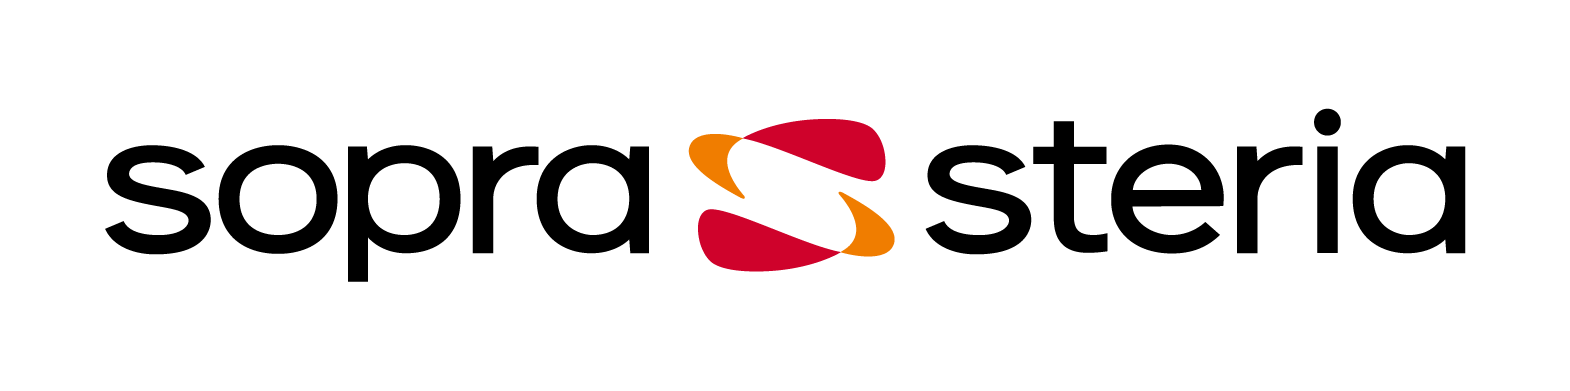 Sopra Steria logo PNG